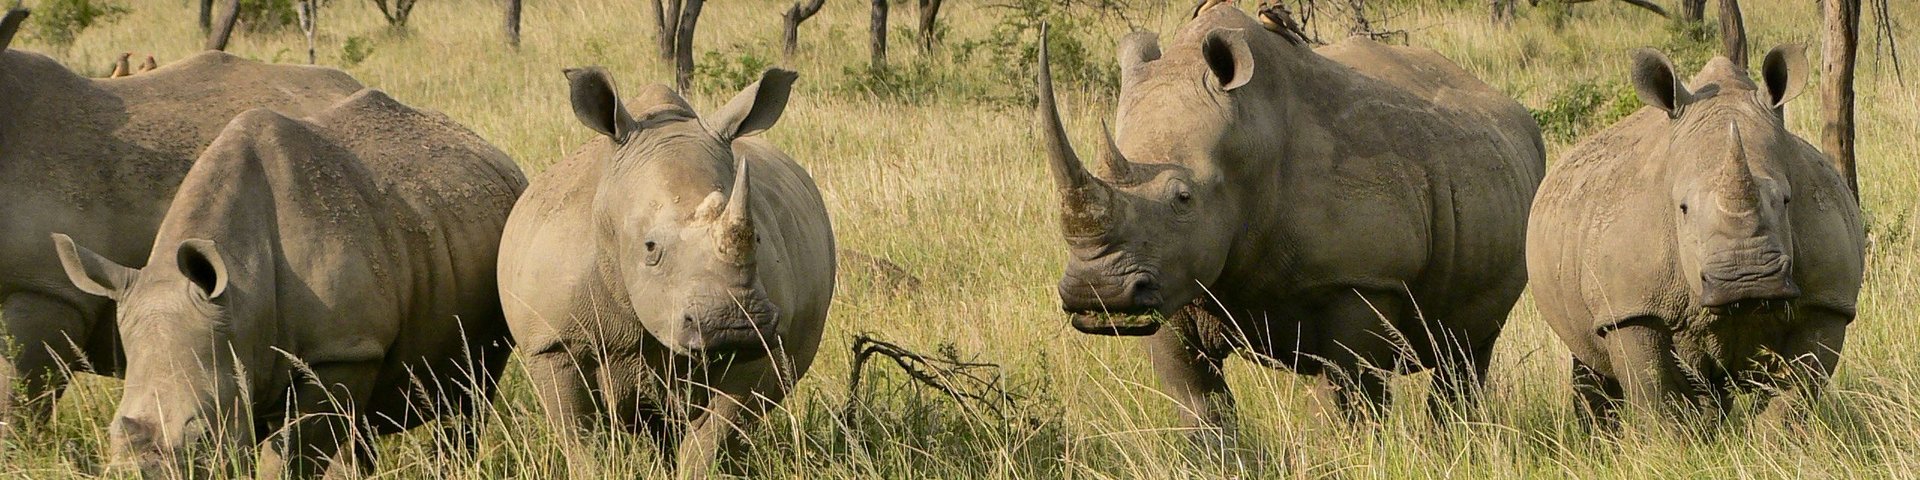 Eine Gruppe Nashörner steht im Gras in Südafrika